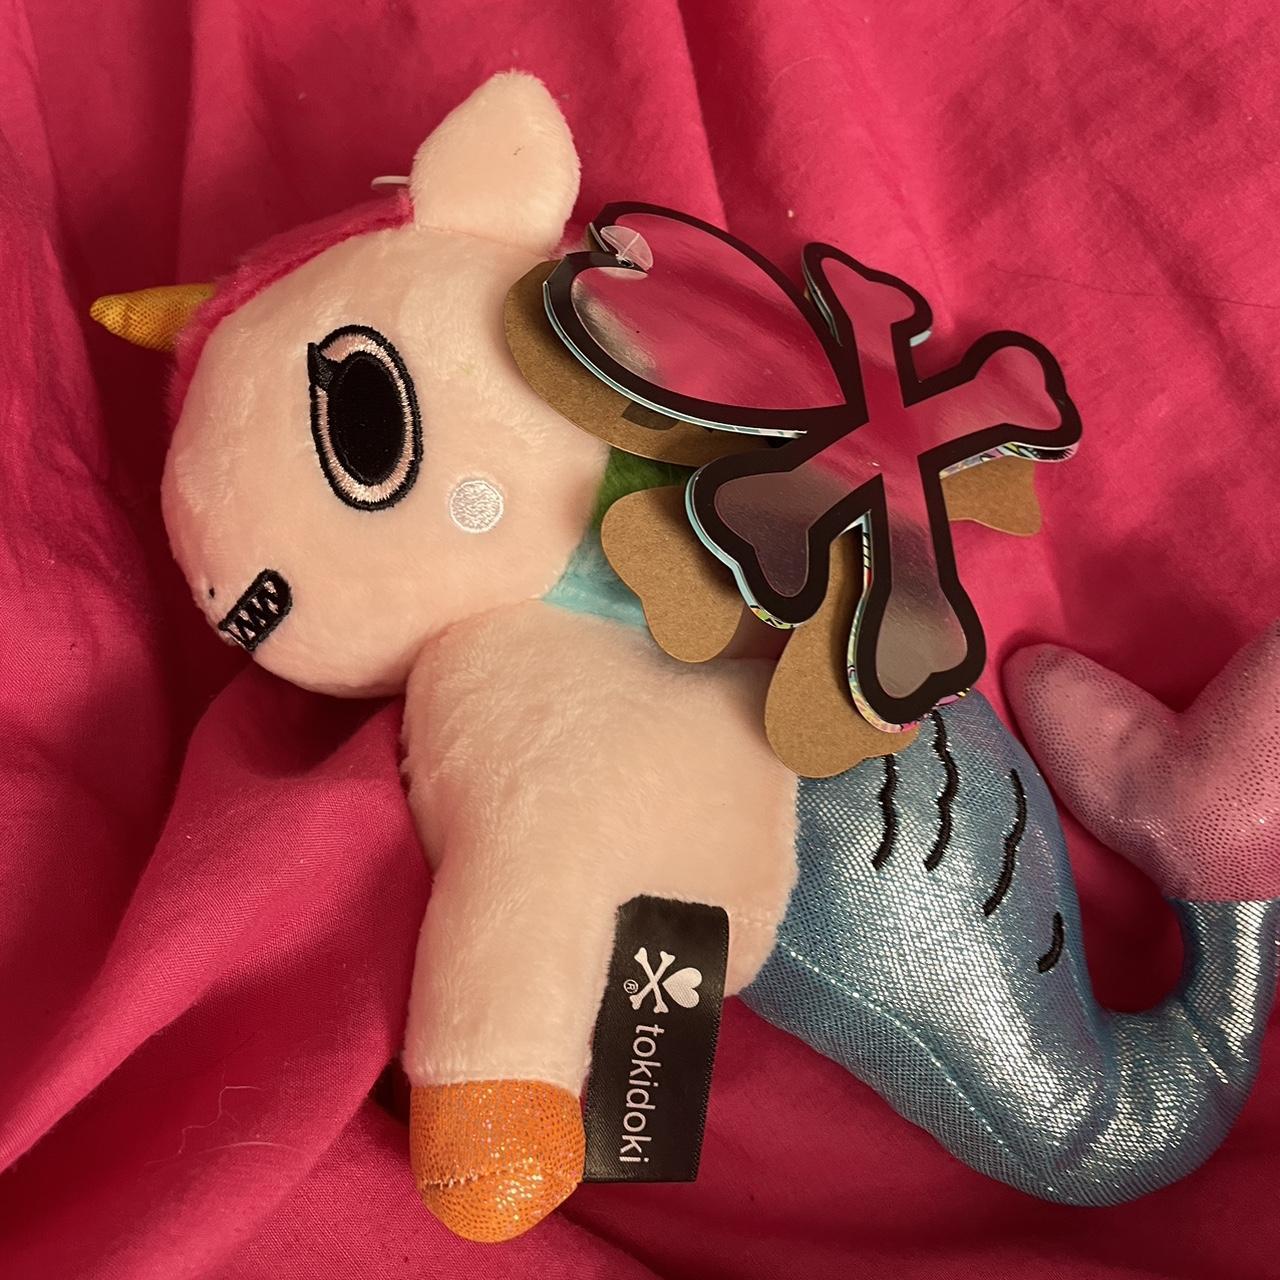 Tokidoki Unicorn Plush, Tokidoki Plush Toys, Unicorn Plush Toy